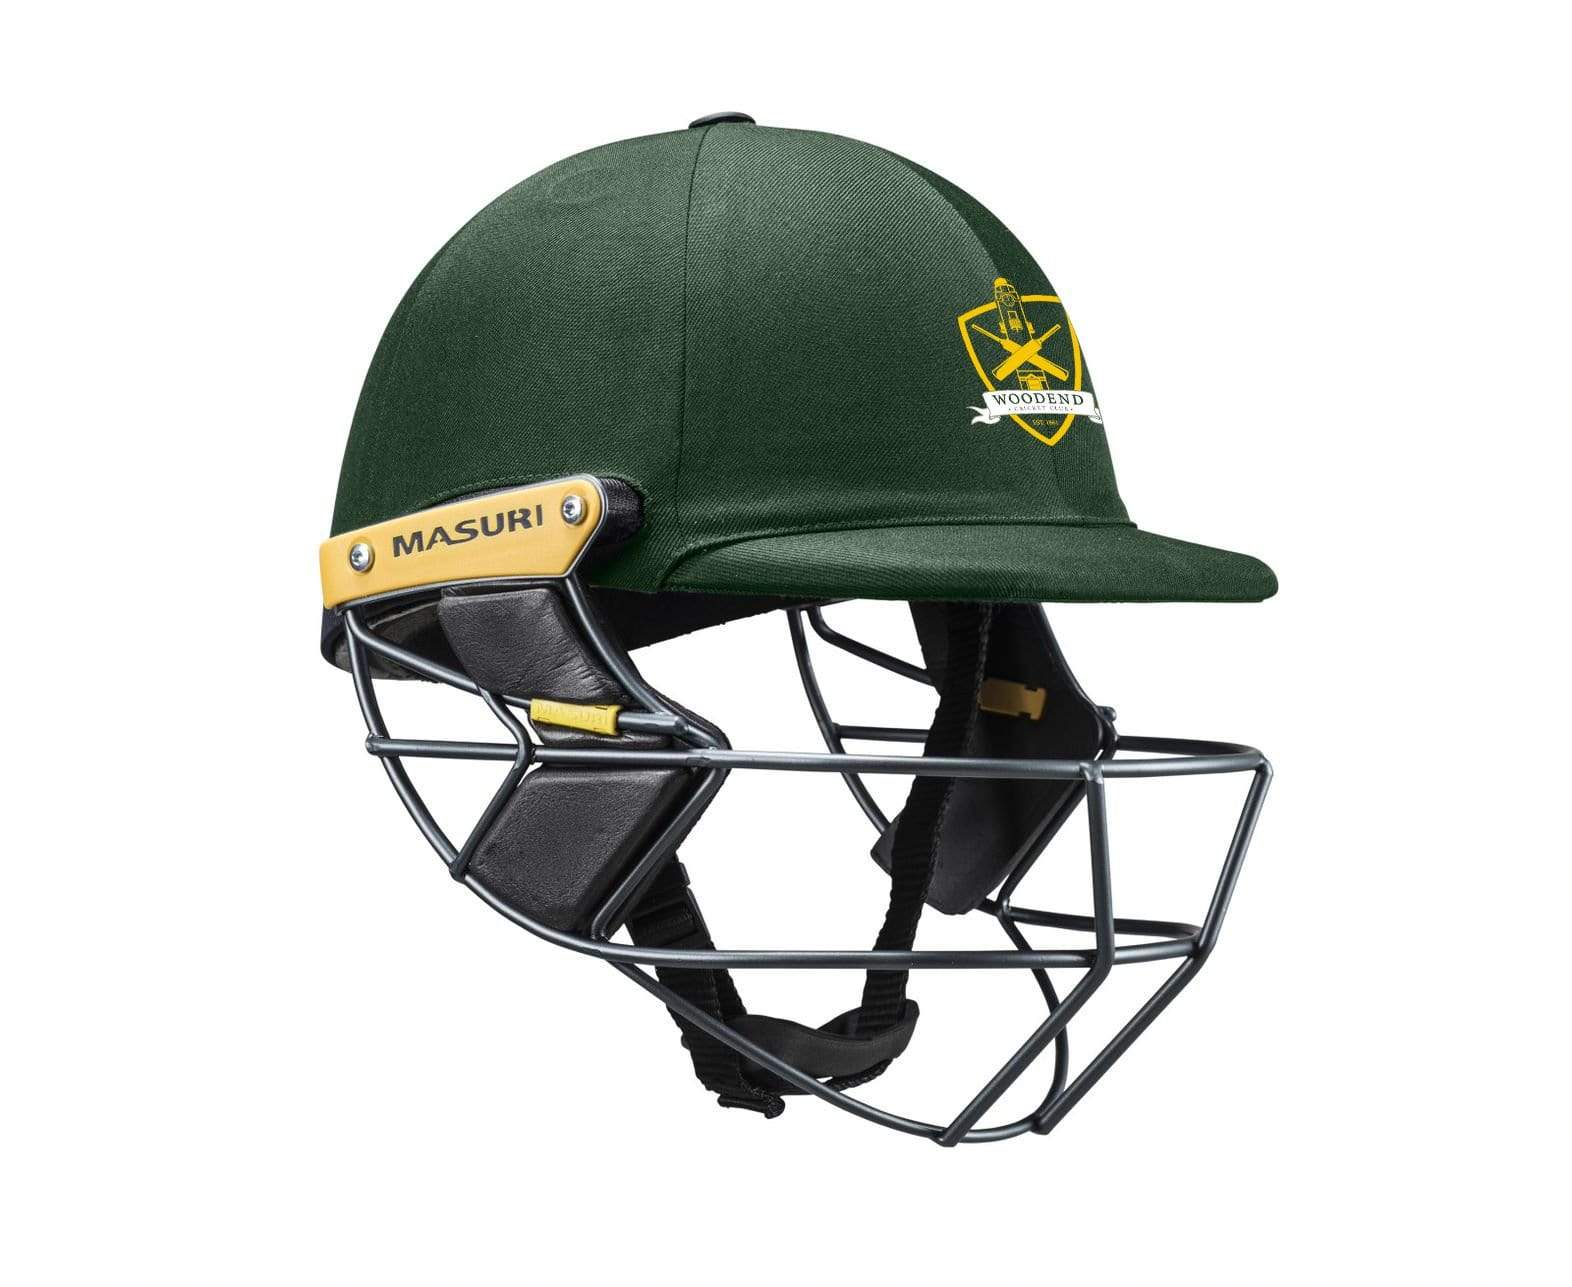 Masuri Club Helmet Woodend Cricket Club Helmet